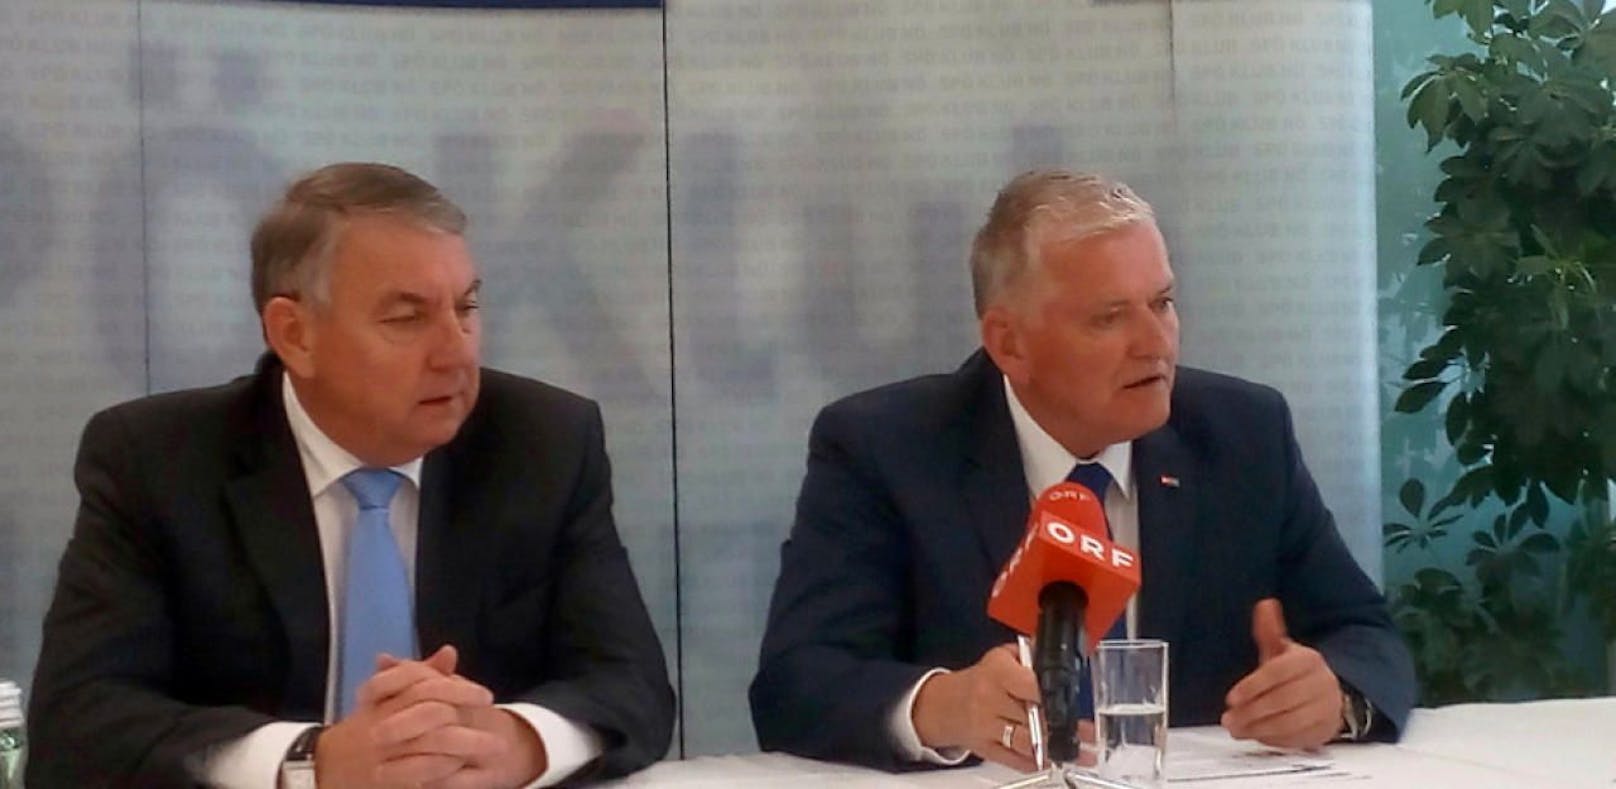 SPÖ Klubobmann, Reinhard Hundsmüller und Landeshauptfrau Stellvertreter, Franz Schnabl, zum Arbeitsprogramm mit der VPNÖ.  